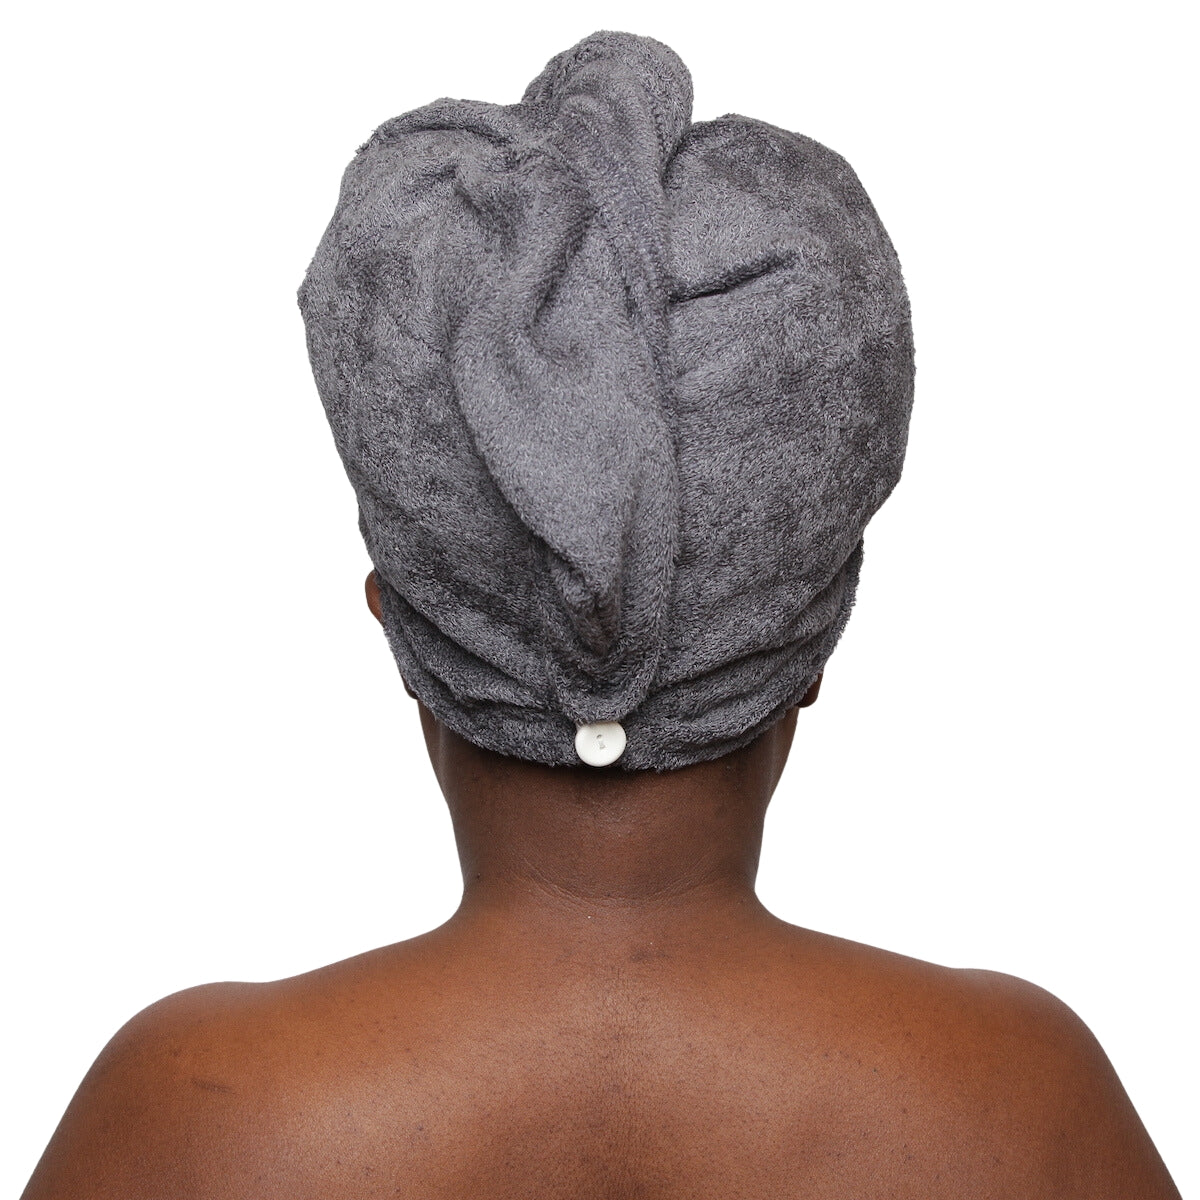 La serviette micro-fibres, un indispensable de votre routine capillaire pour sécher en douceur vos cheveux bouclés/crépus. Fabriquée à la main. Coton bio OEKO-TEX.